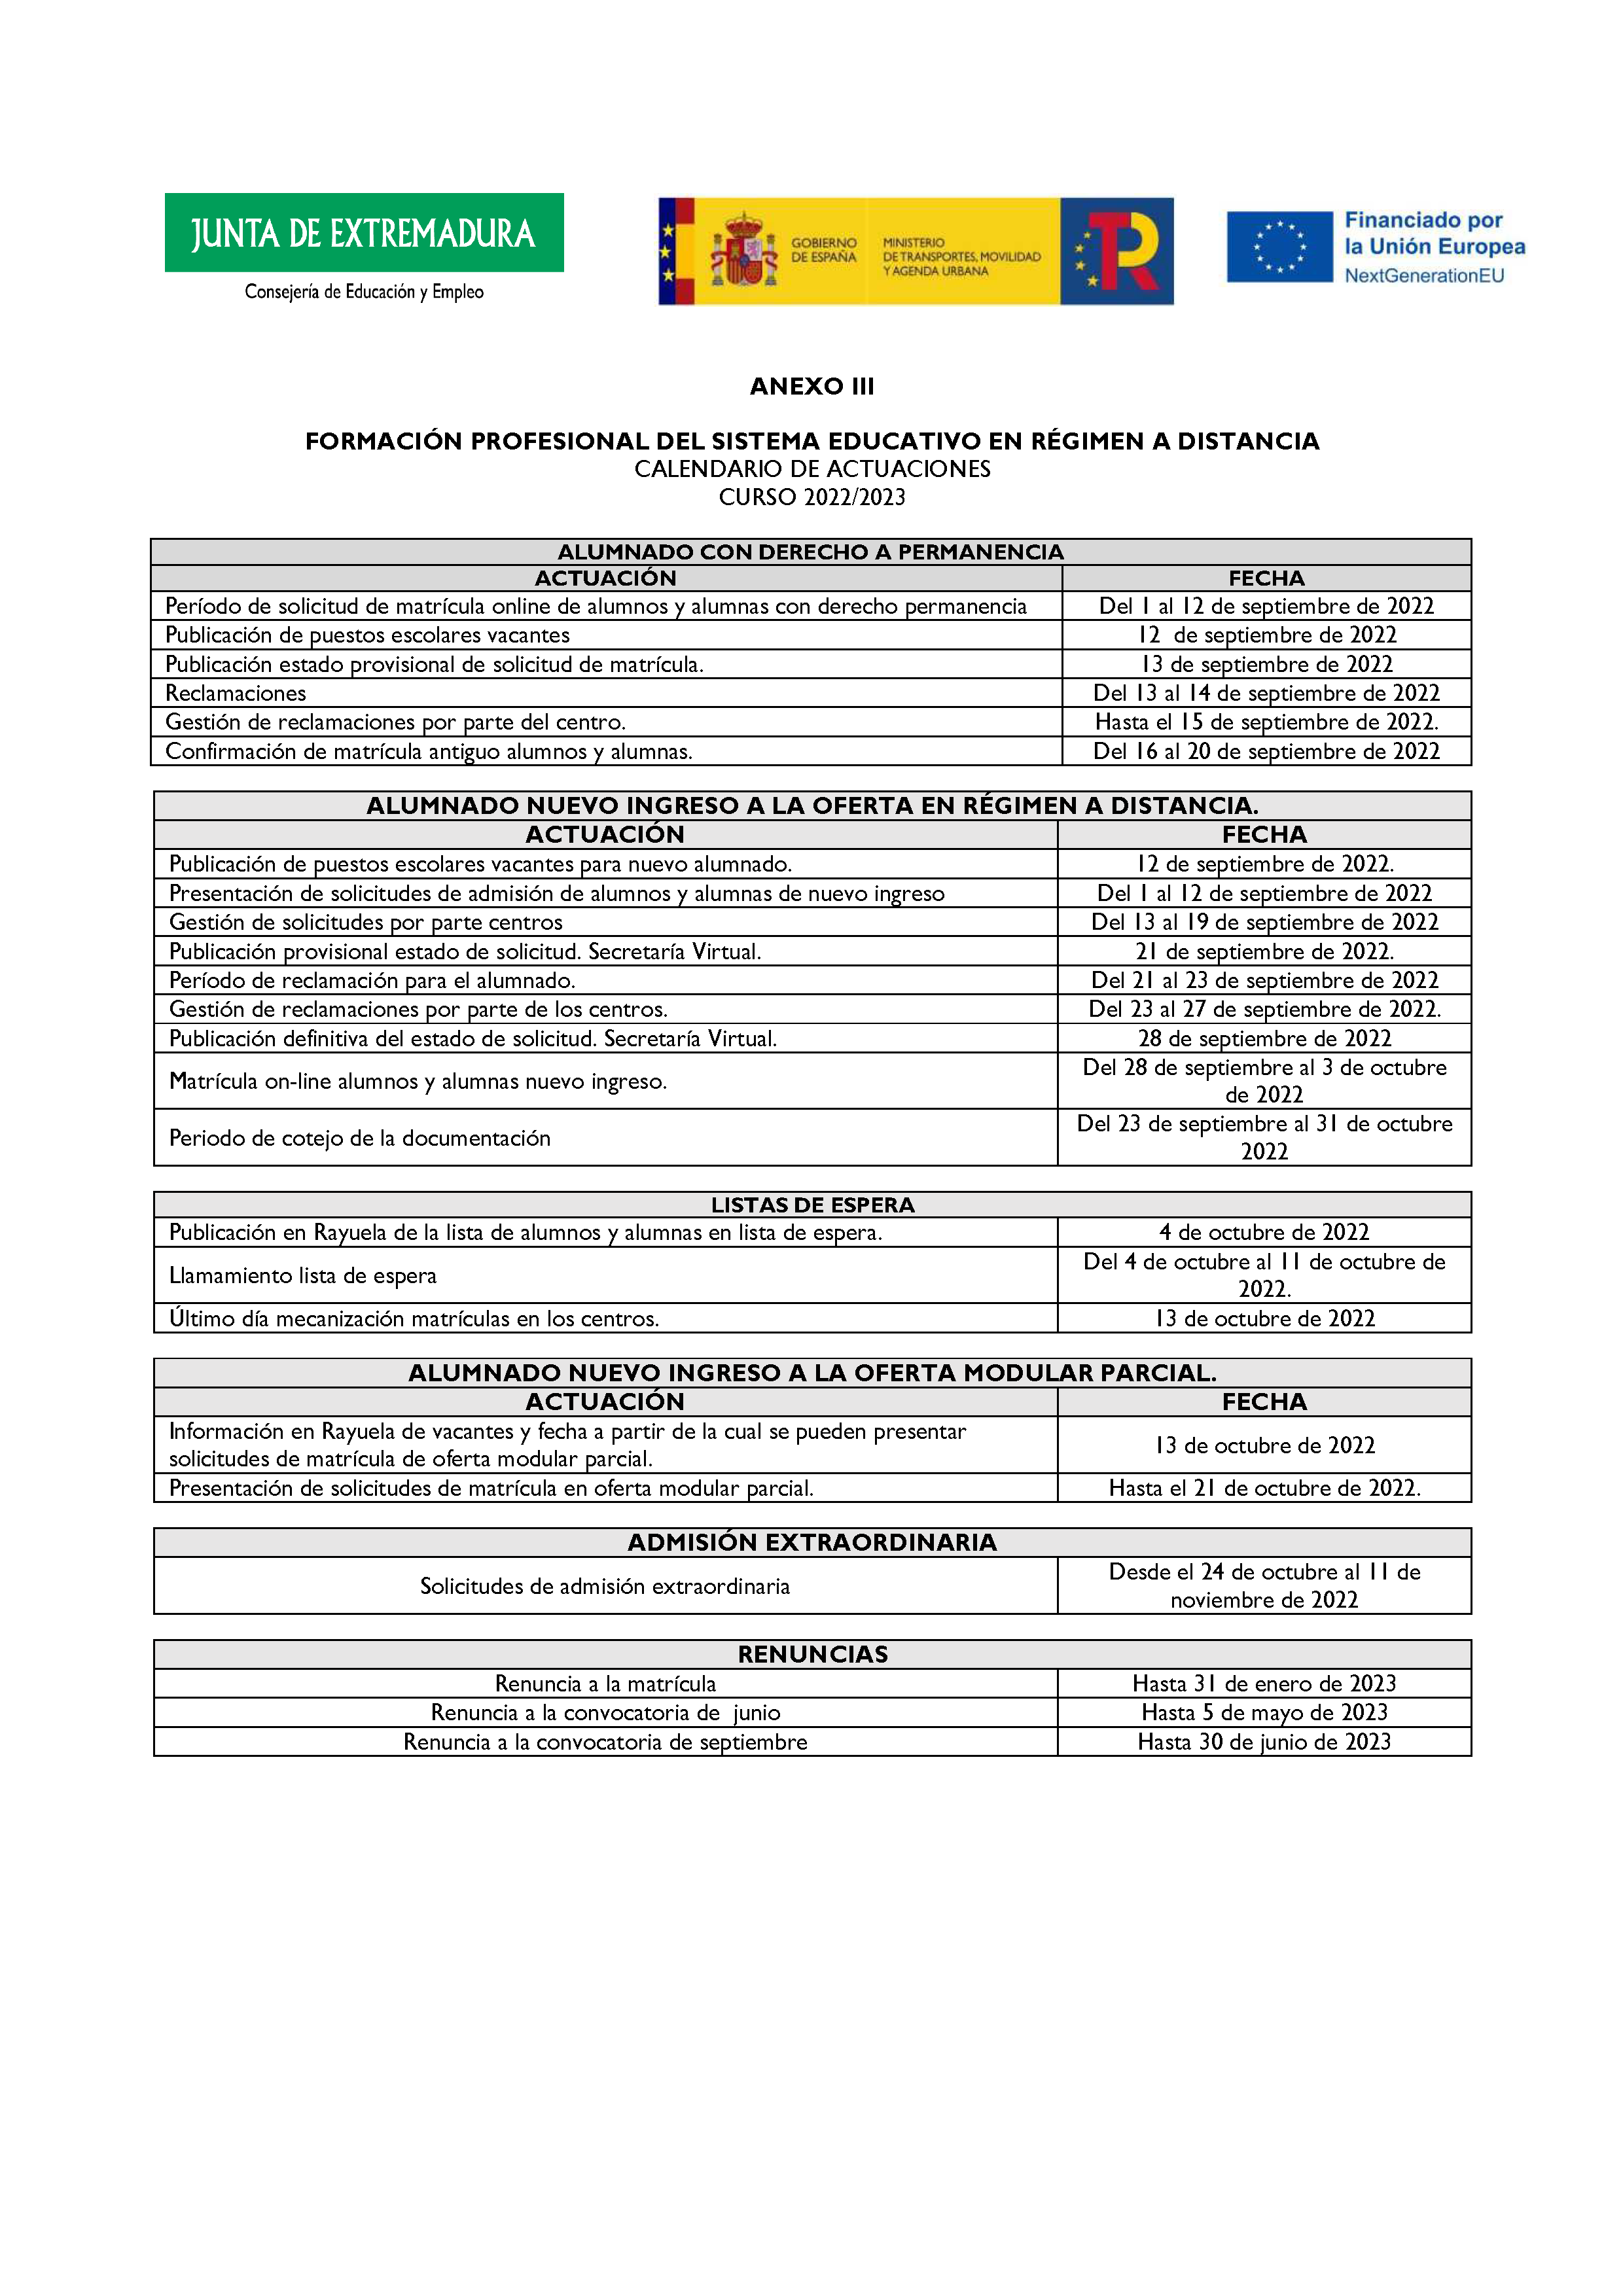 ANEXO FORMACIÓN PROFESIONAL DEL SISTEMA EDUCATIVO RÉGIMEN A DISTANCIA Pag 13